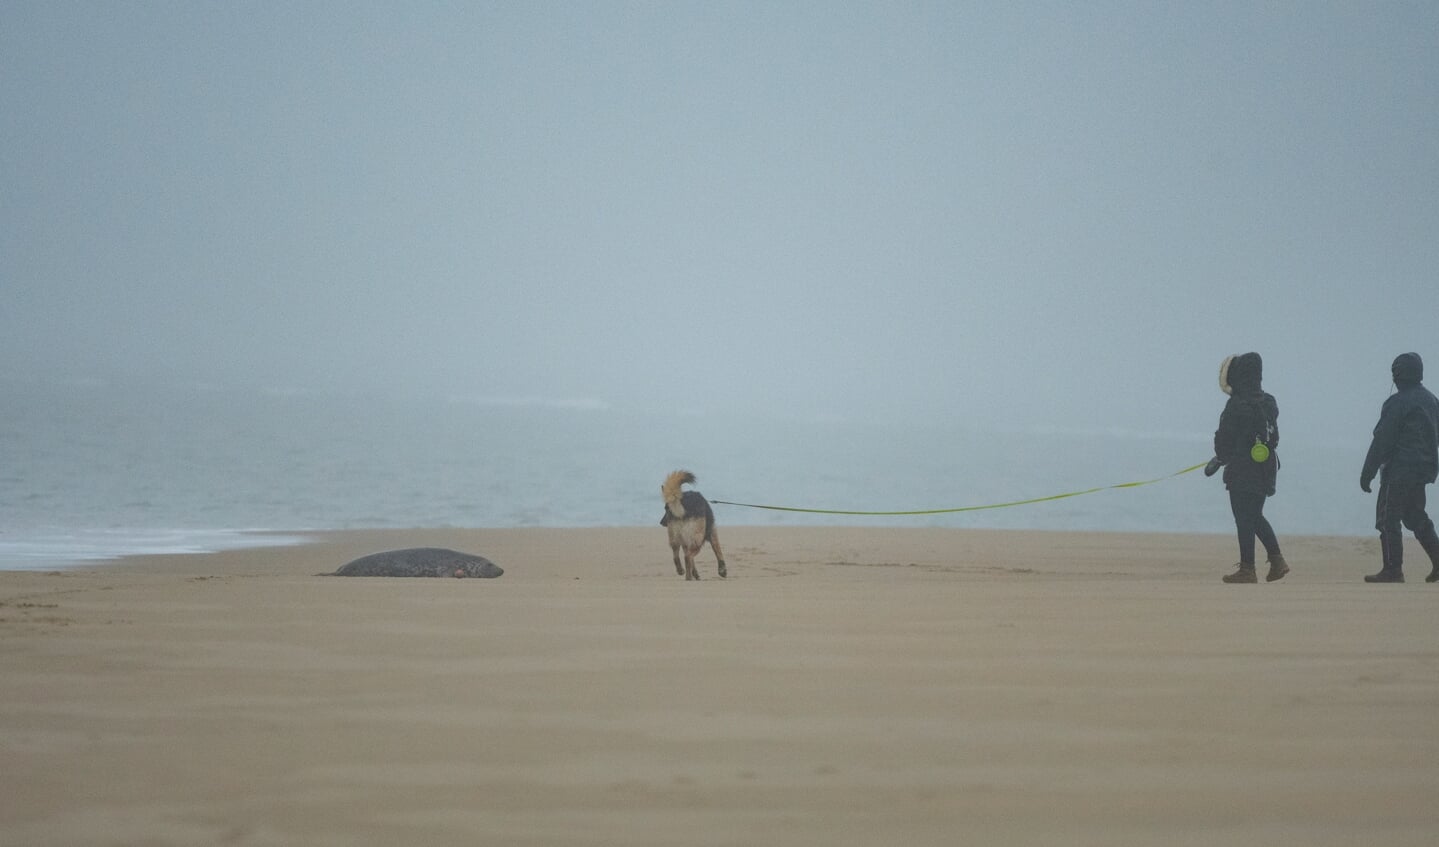 Wandelaars met hond die veel te dicht bij de zeehonden komen (Foto: Jan Baks).